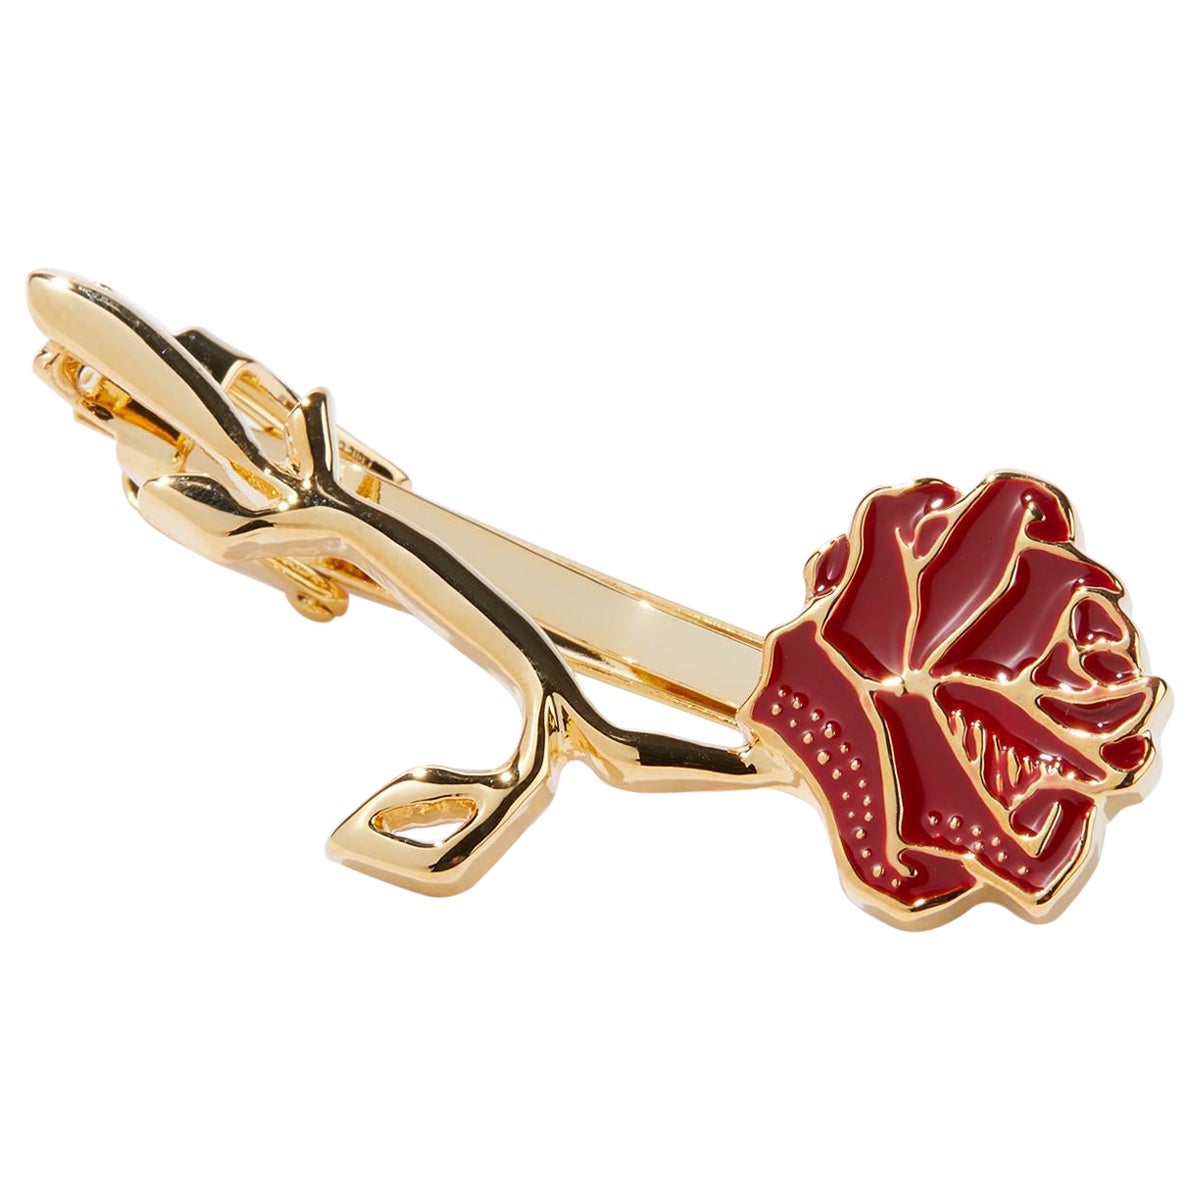 Cravate à cravate bordeaux en or 24 carats avec finition laquée brillante en vente